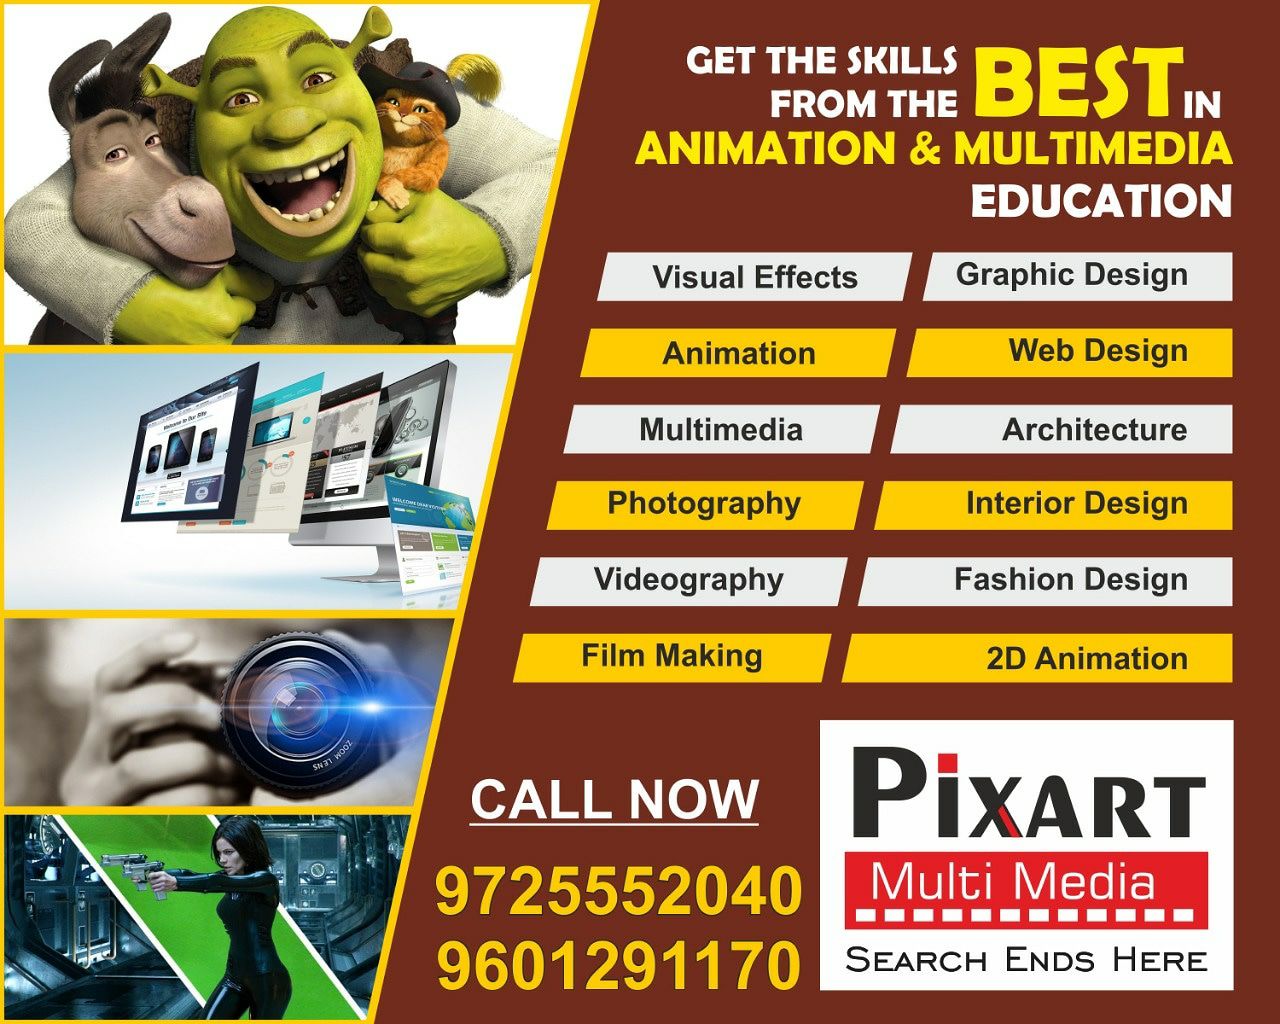 Pixart Multimedia Institute in Ahmedabad